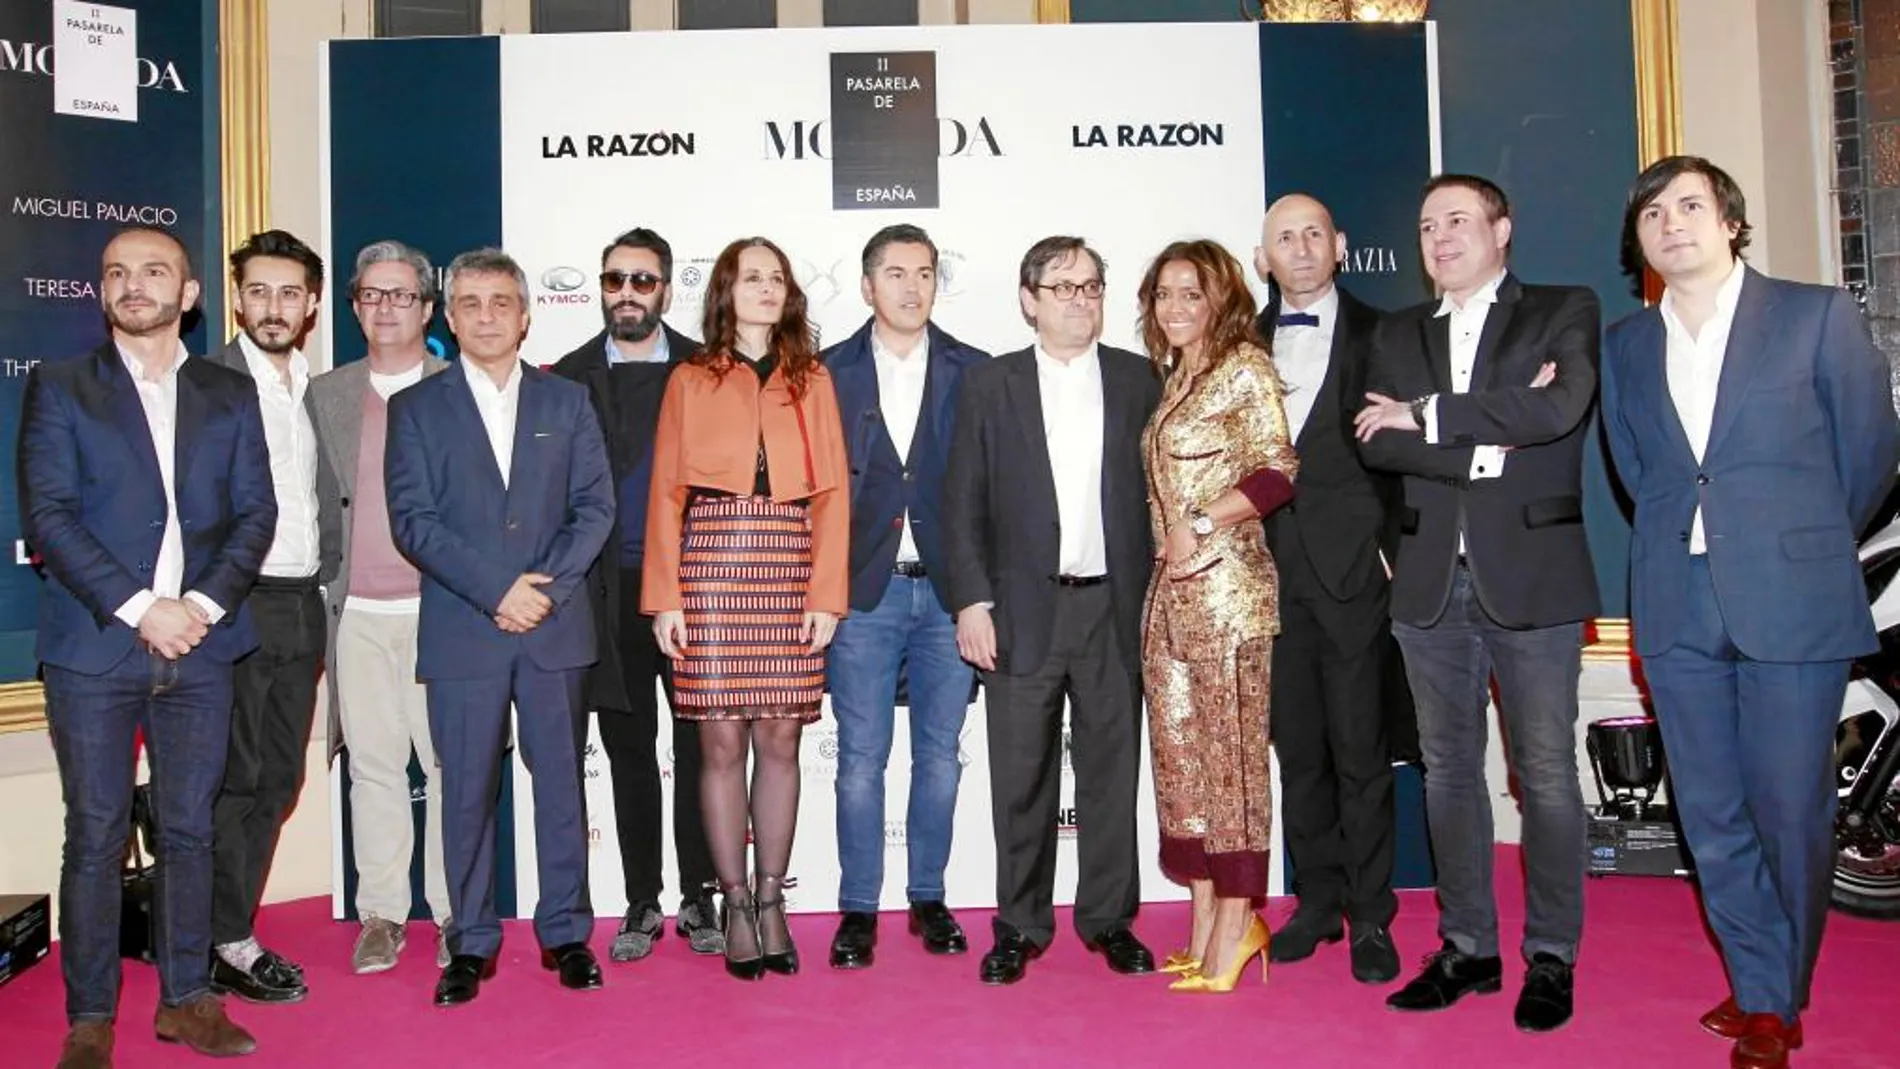 Los diseñadores que hicieron desfilar sus propuestas junto a Francisco Marhuenda, director de LA RAZÓN